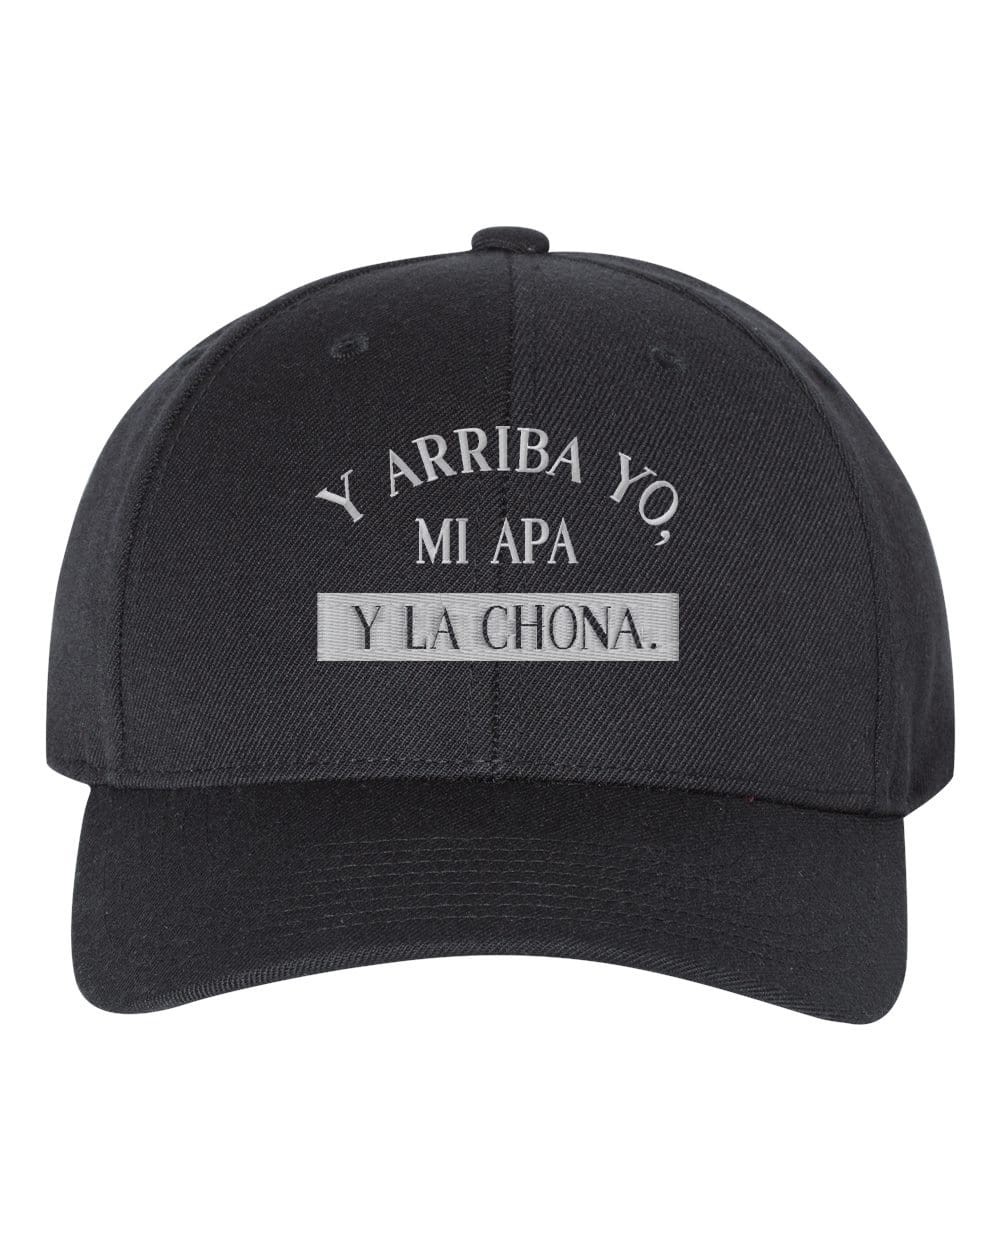 Y Arriba Yo, Mi Apa y La Chona Embroidery Snapback Hat Cap